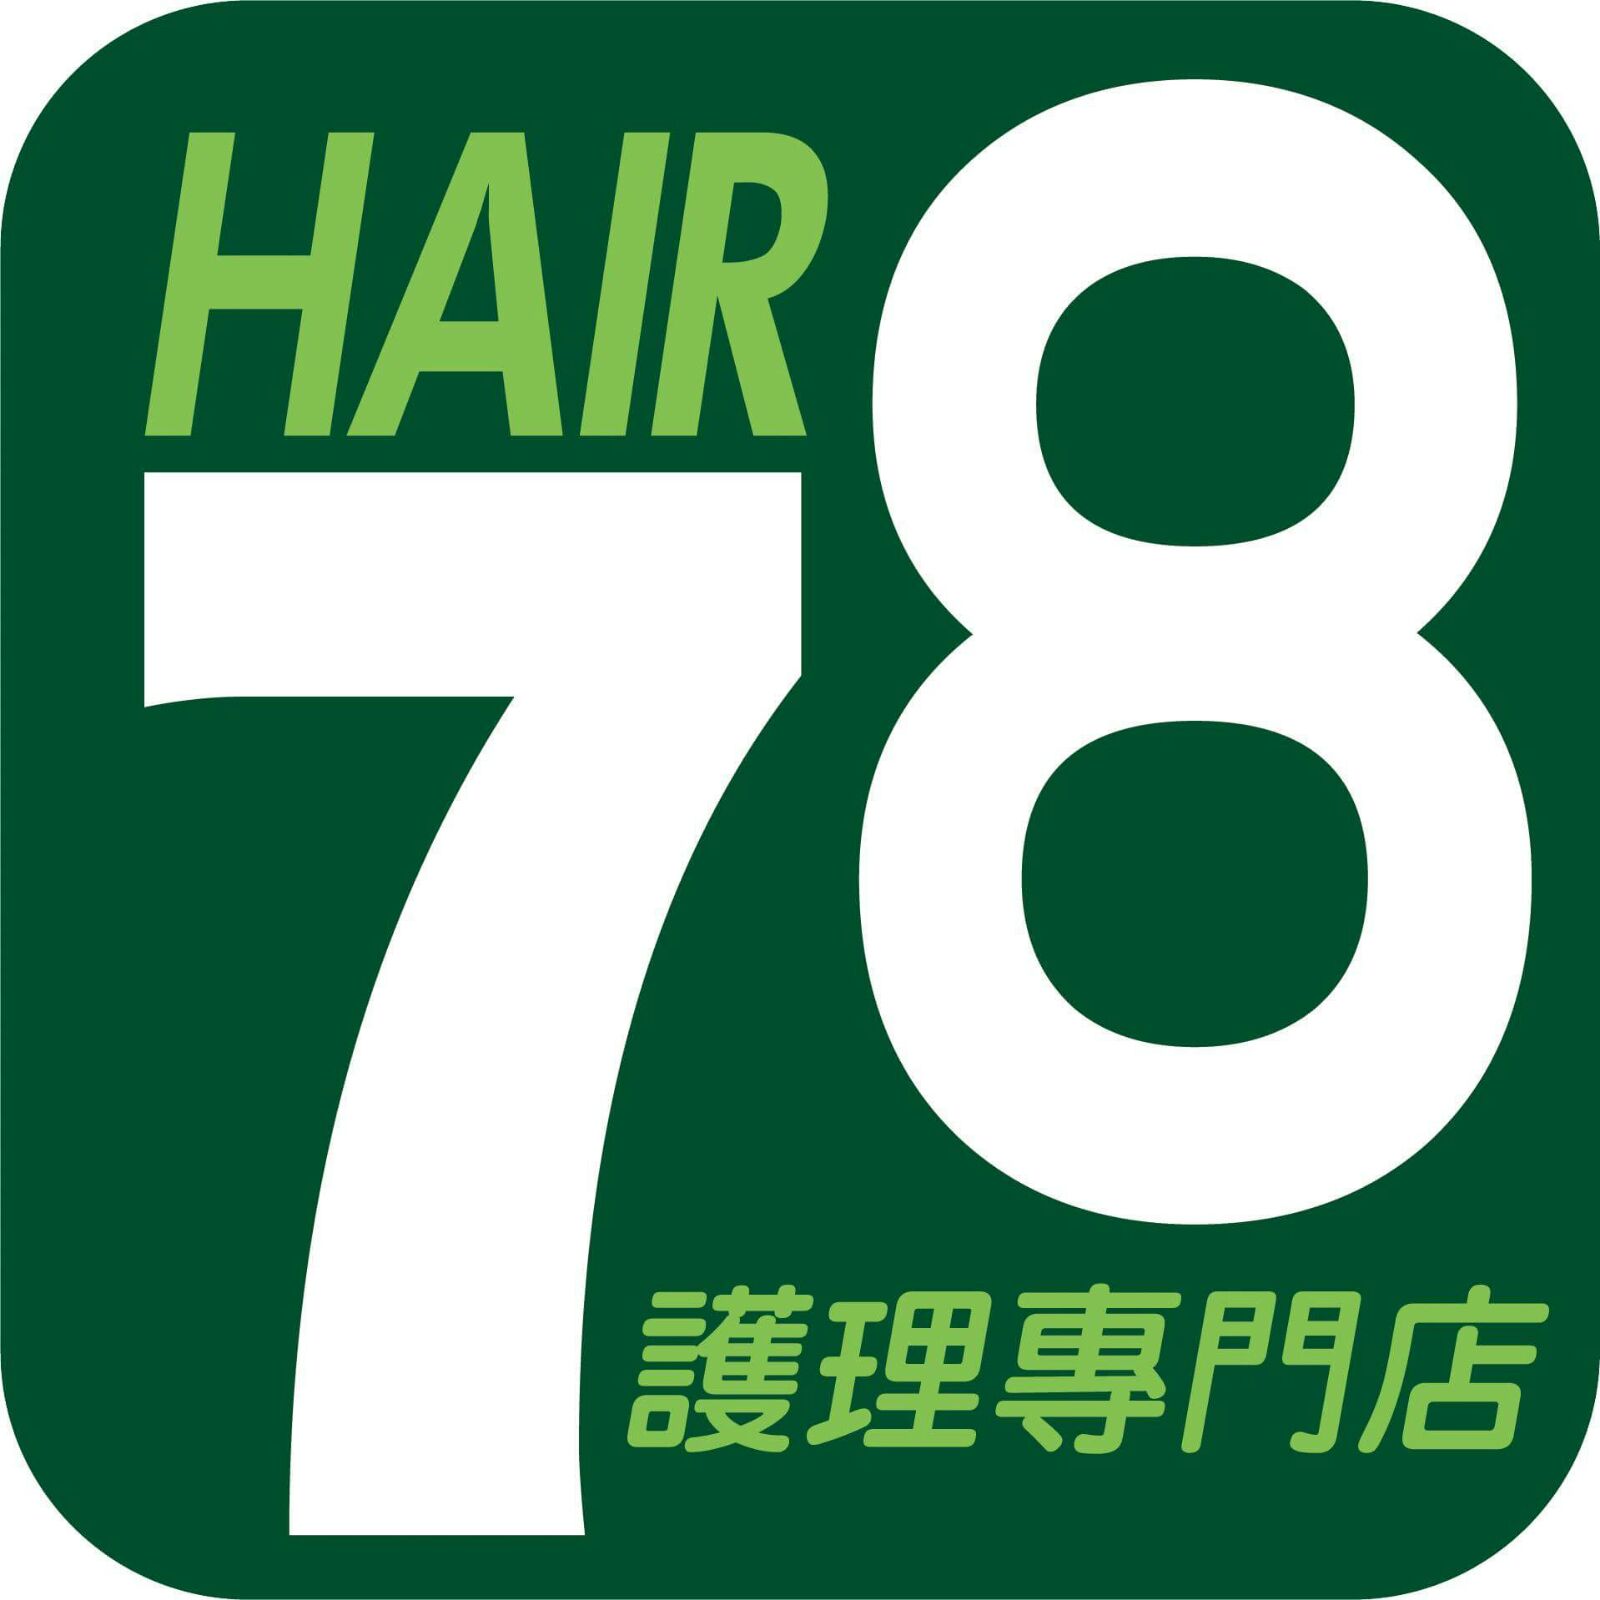 髮型屋 Salon: 78Hair護理專門店